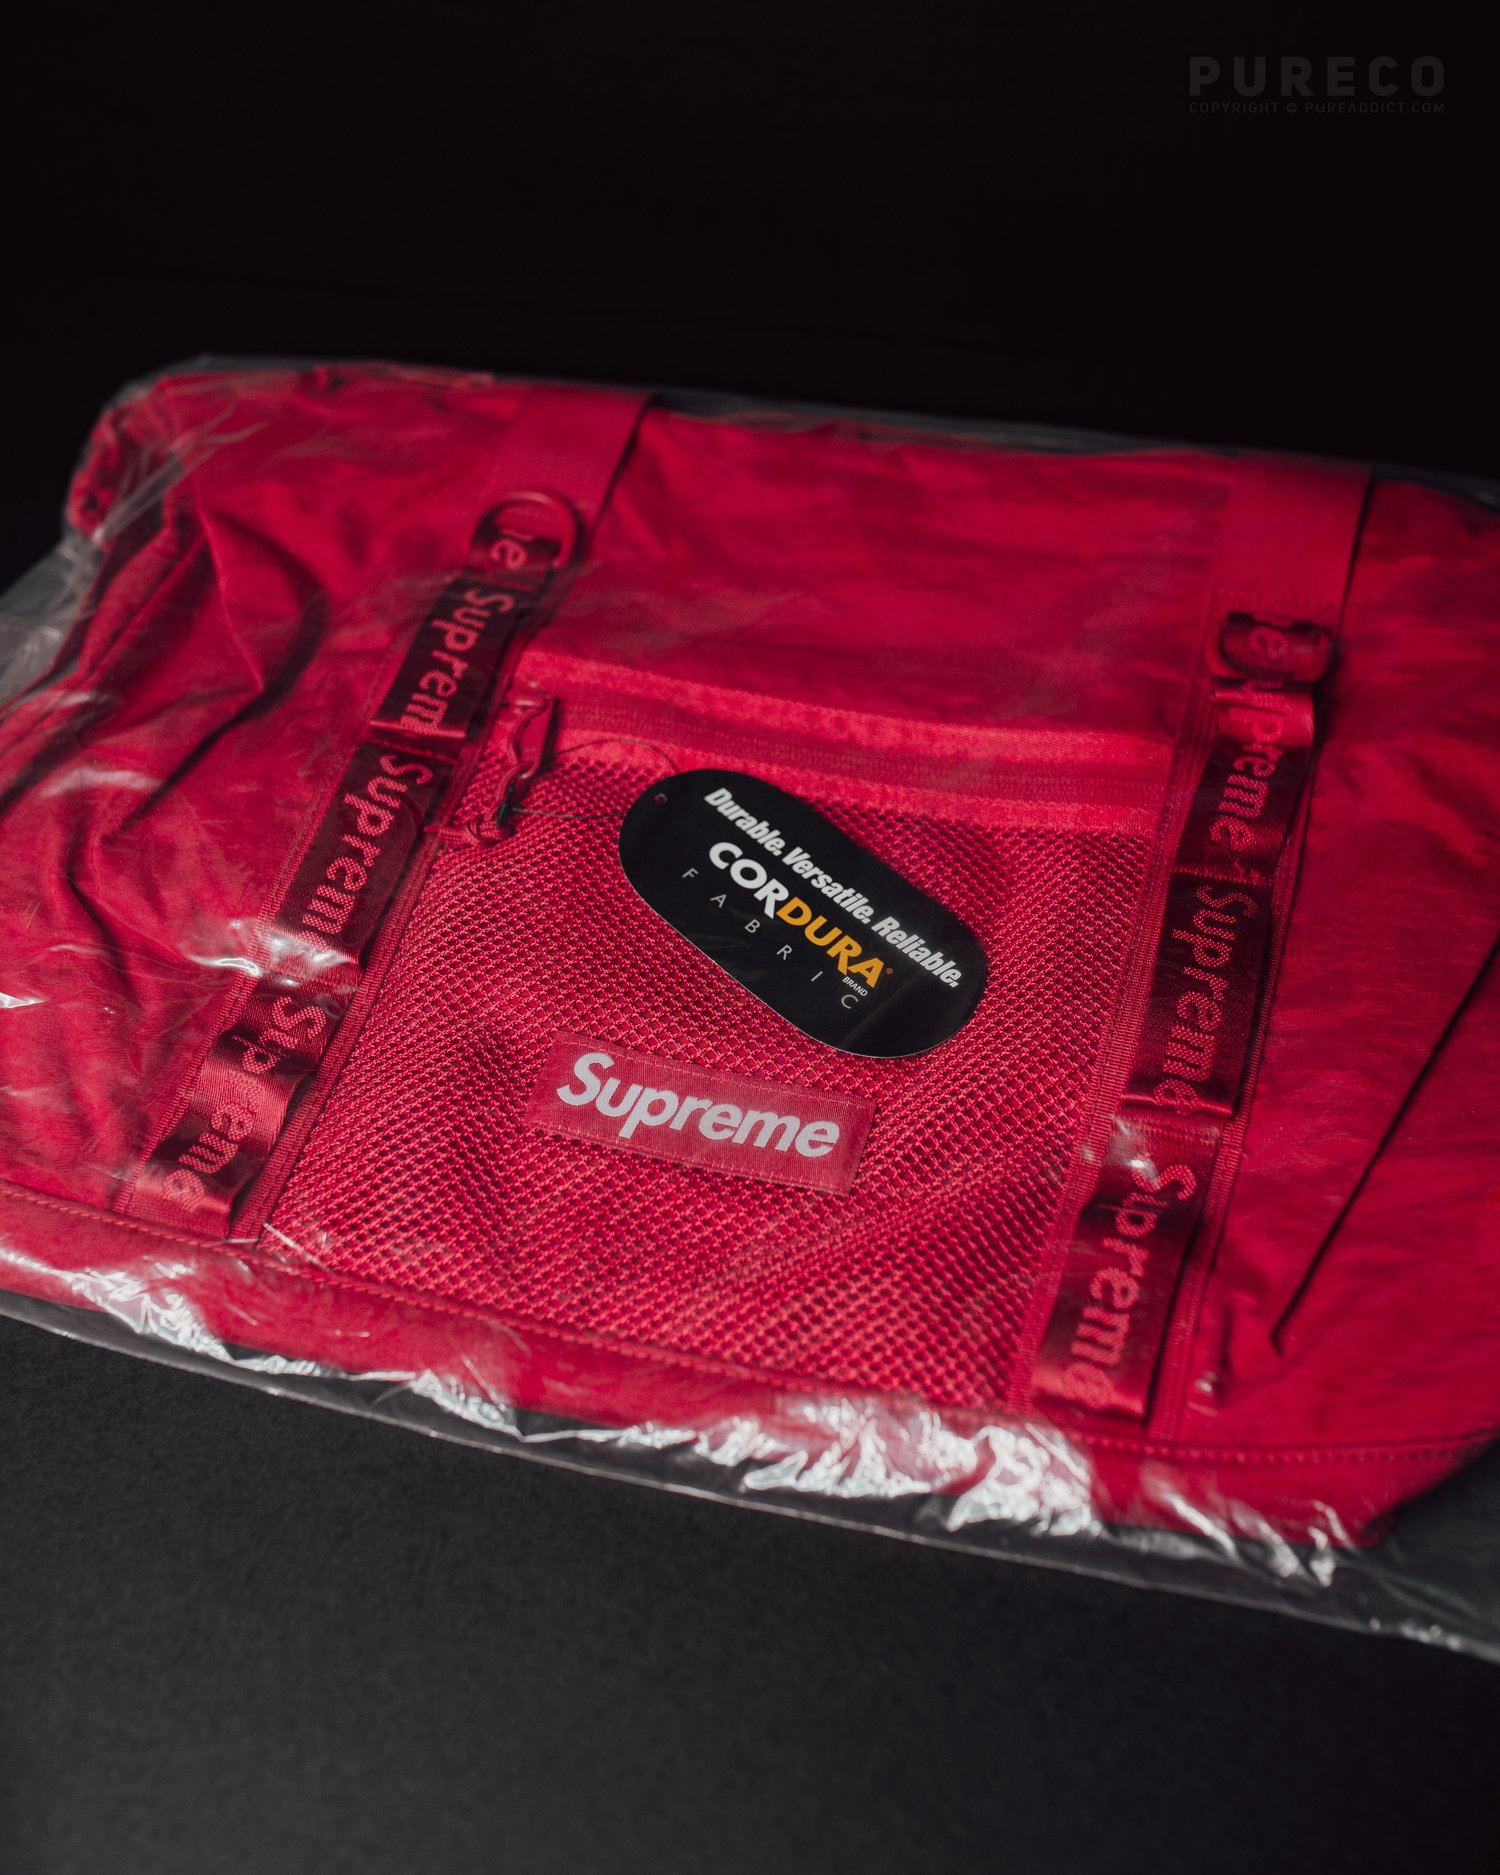 Supreme Shoulder Bag 'Red